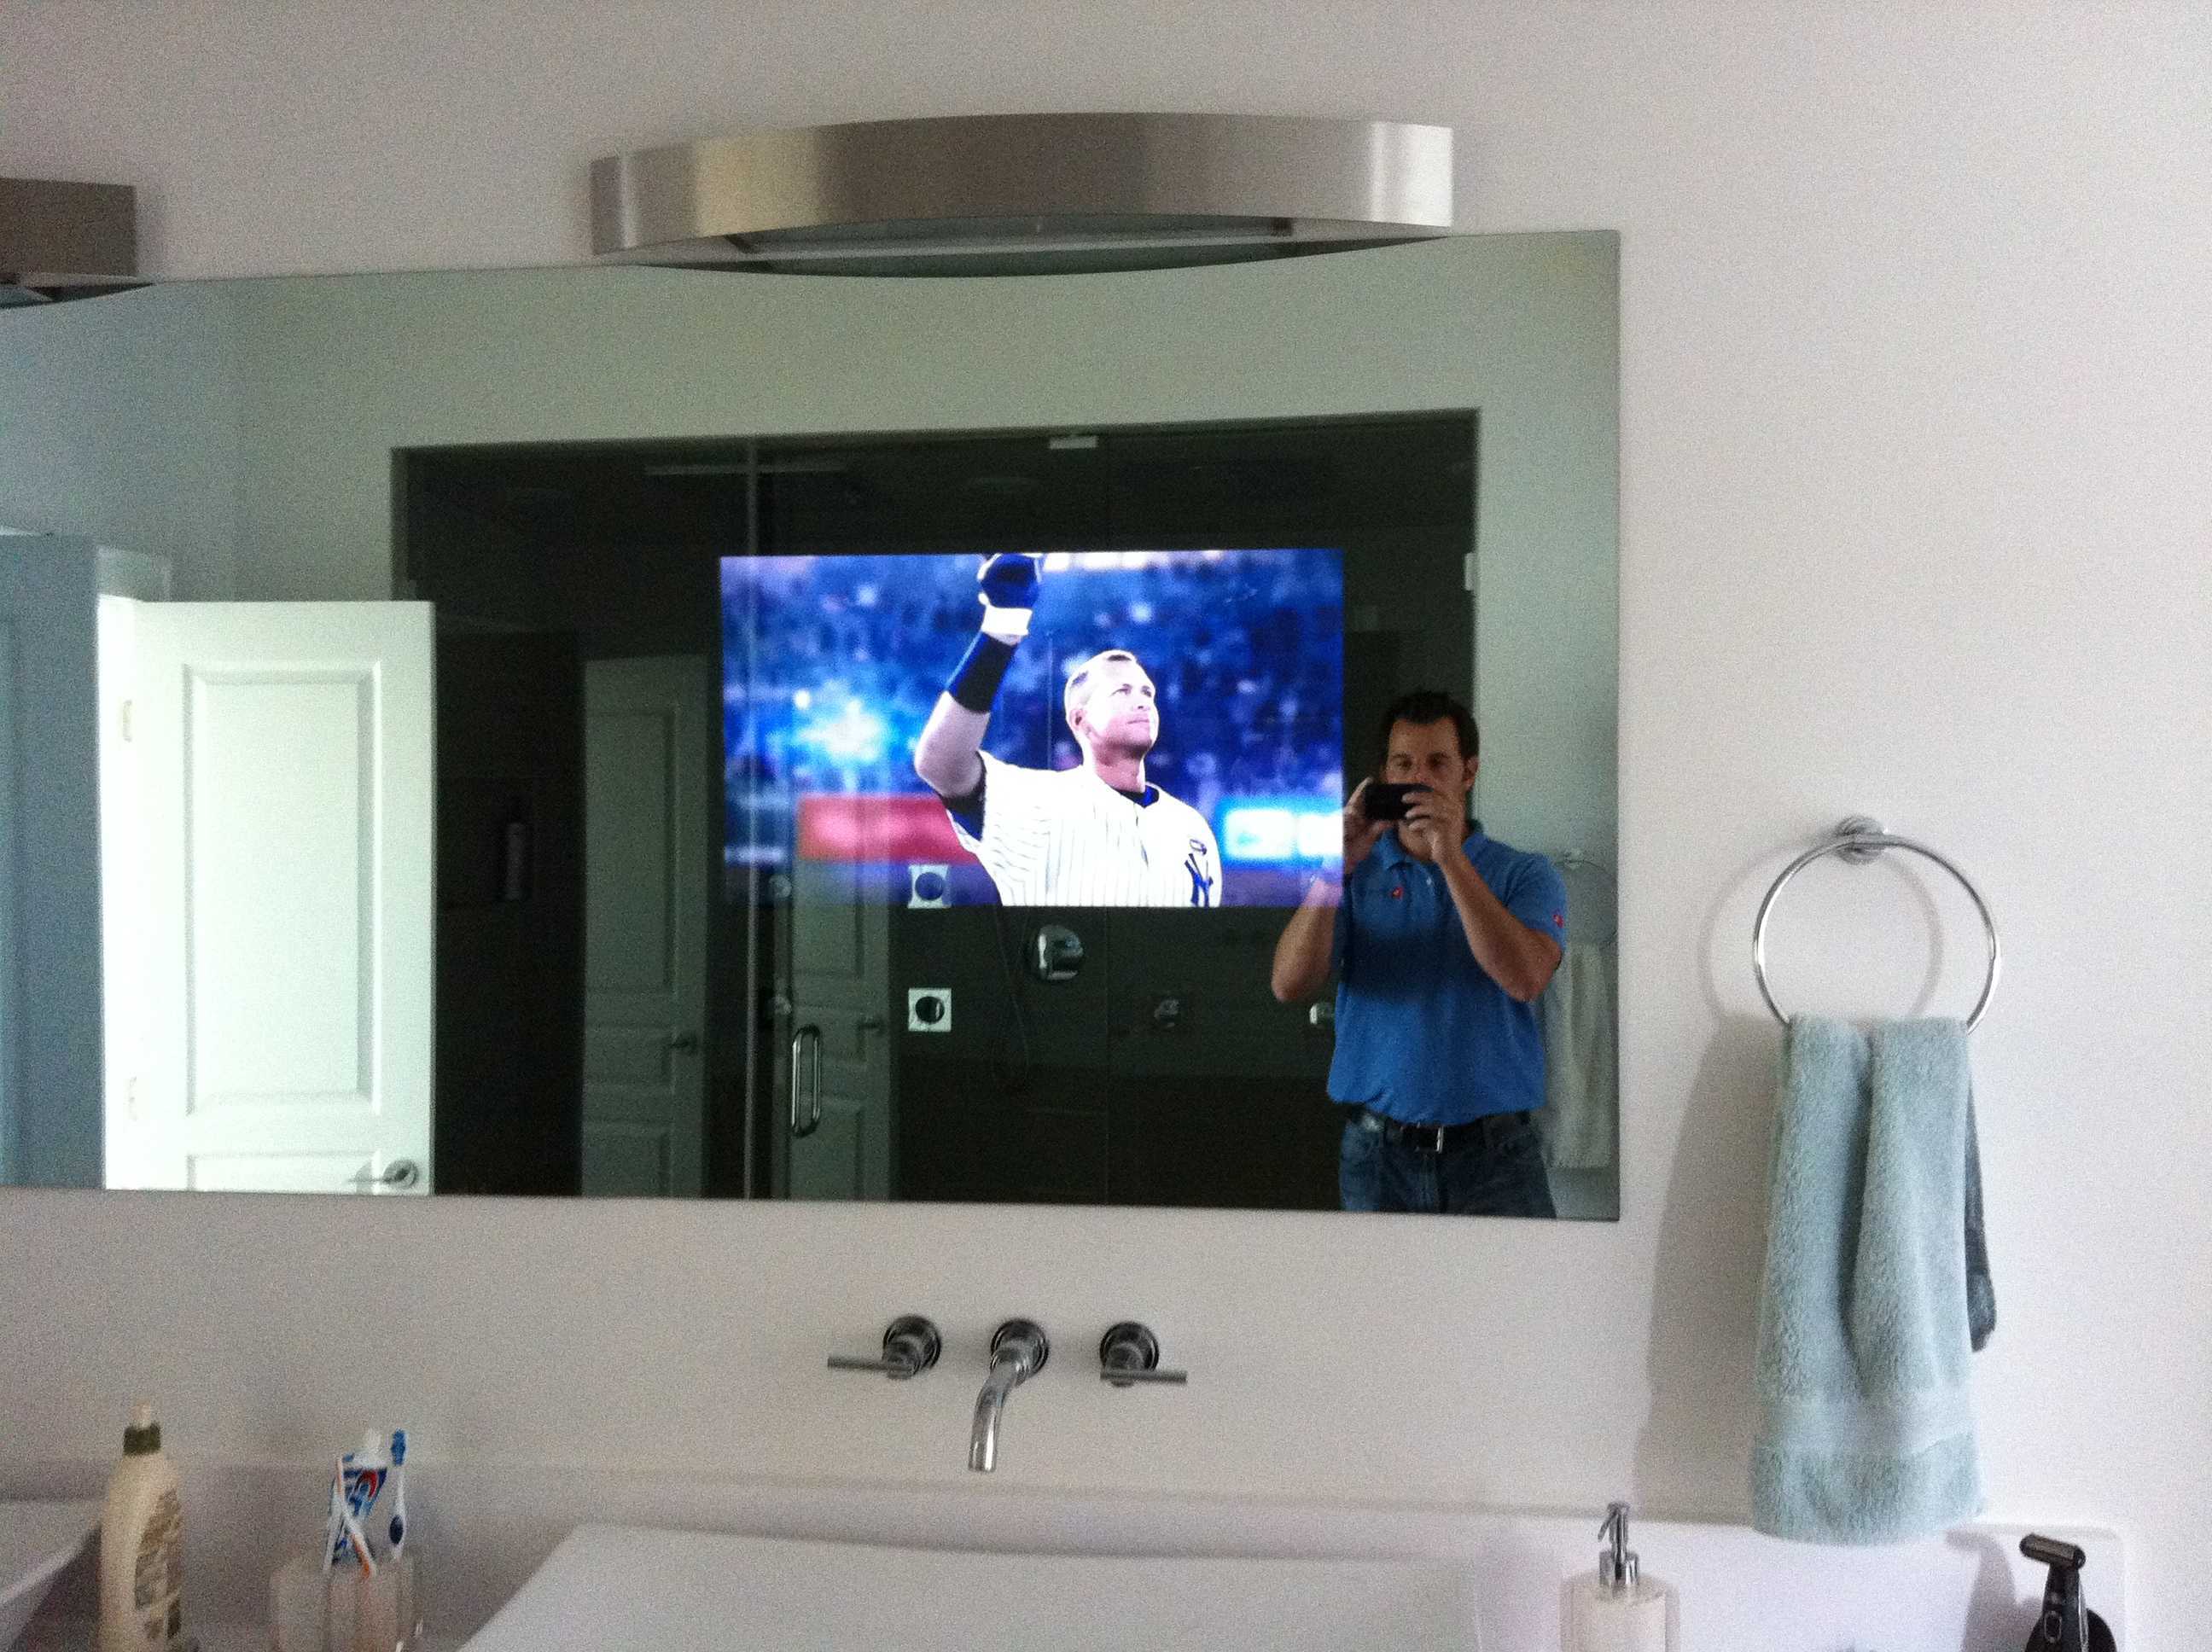 Как правильно выбрать размер диагонали телевизора для комнаты